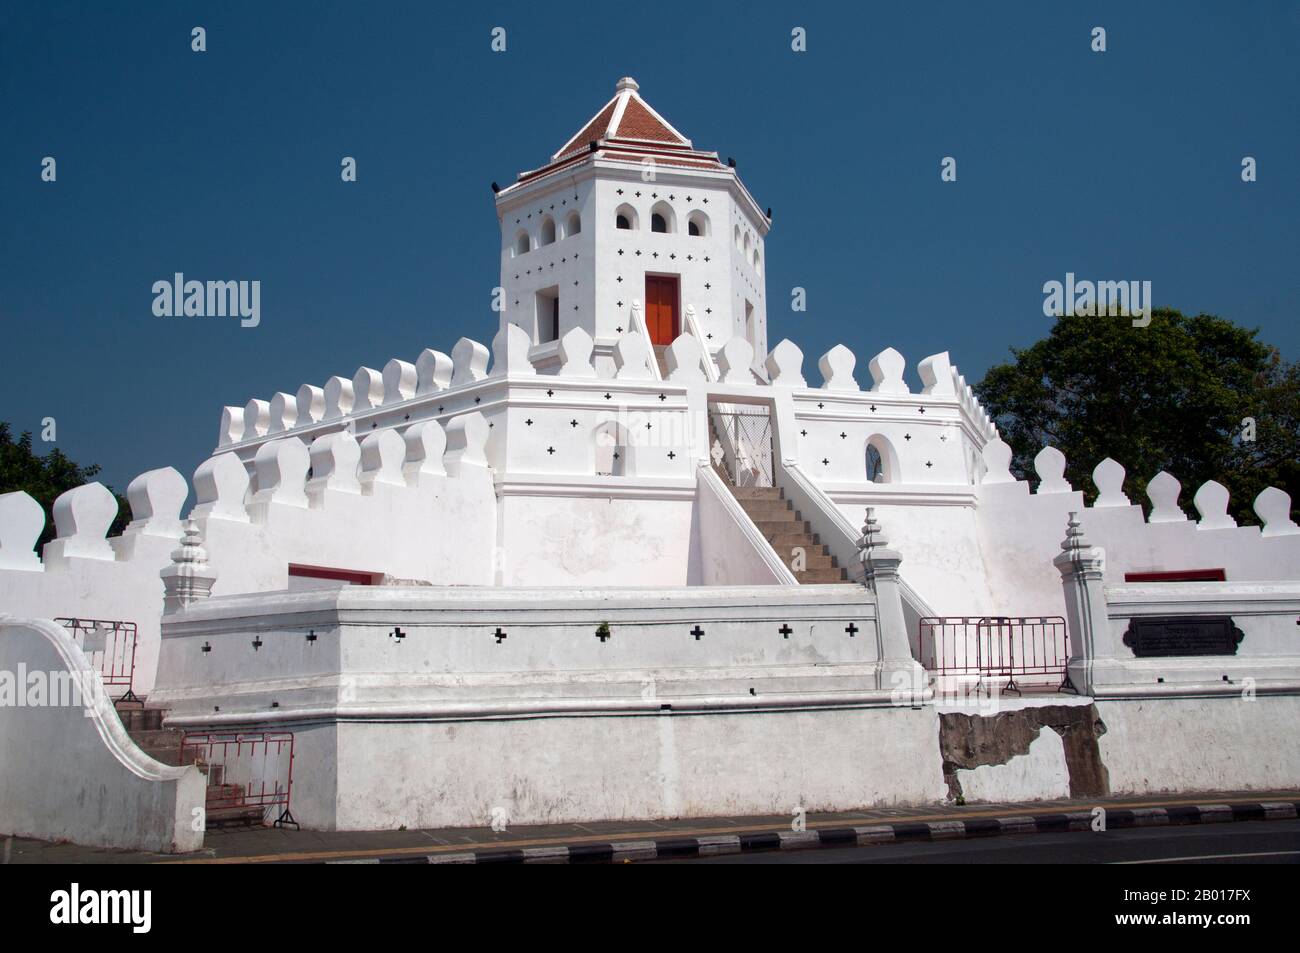 Thailand: Phra Sumen Fort, Bangkok. Das Fort Phra Sumen wurde 1783 unter König Buddha Yodfa Chulaloke (Rama I) erbaut. Es ist eine von 14 Festungen, die zum Schutz Bangkoks verwendet wurden. Heute überleben nur noch zwei, Phra Sumen Fort und Fort Mahakan. Stockfoto